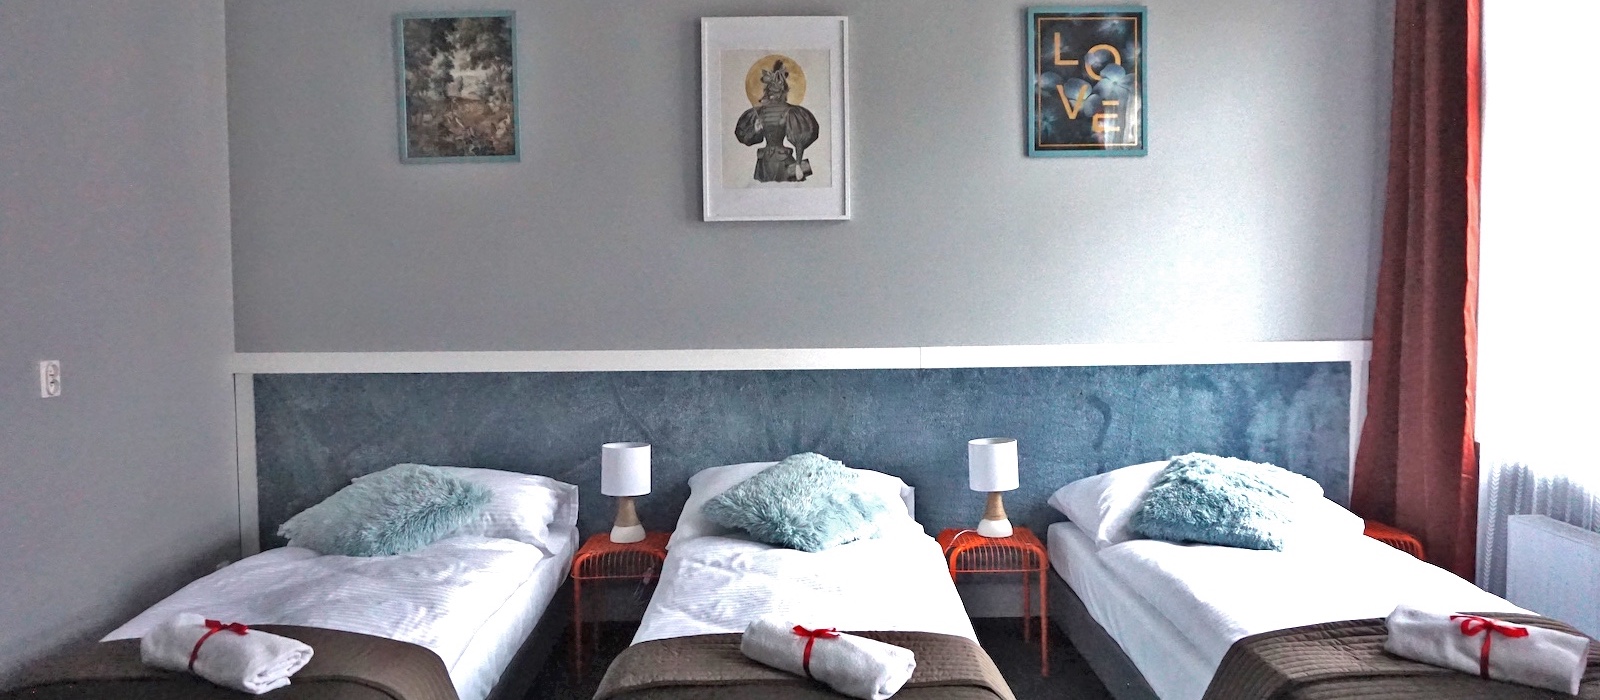 Pokój trzyosobowy Comfort w Hotelu Expolis Residence baner